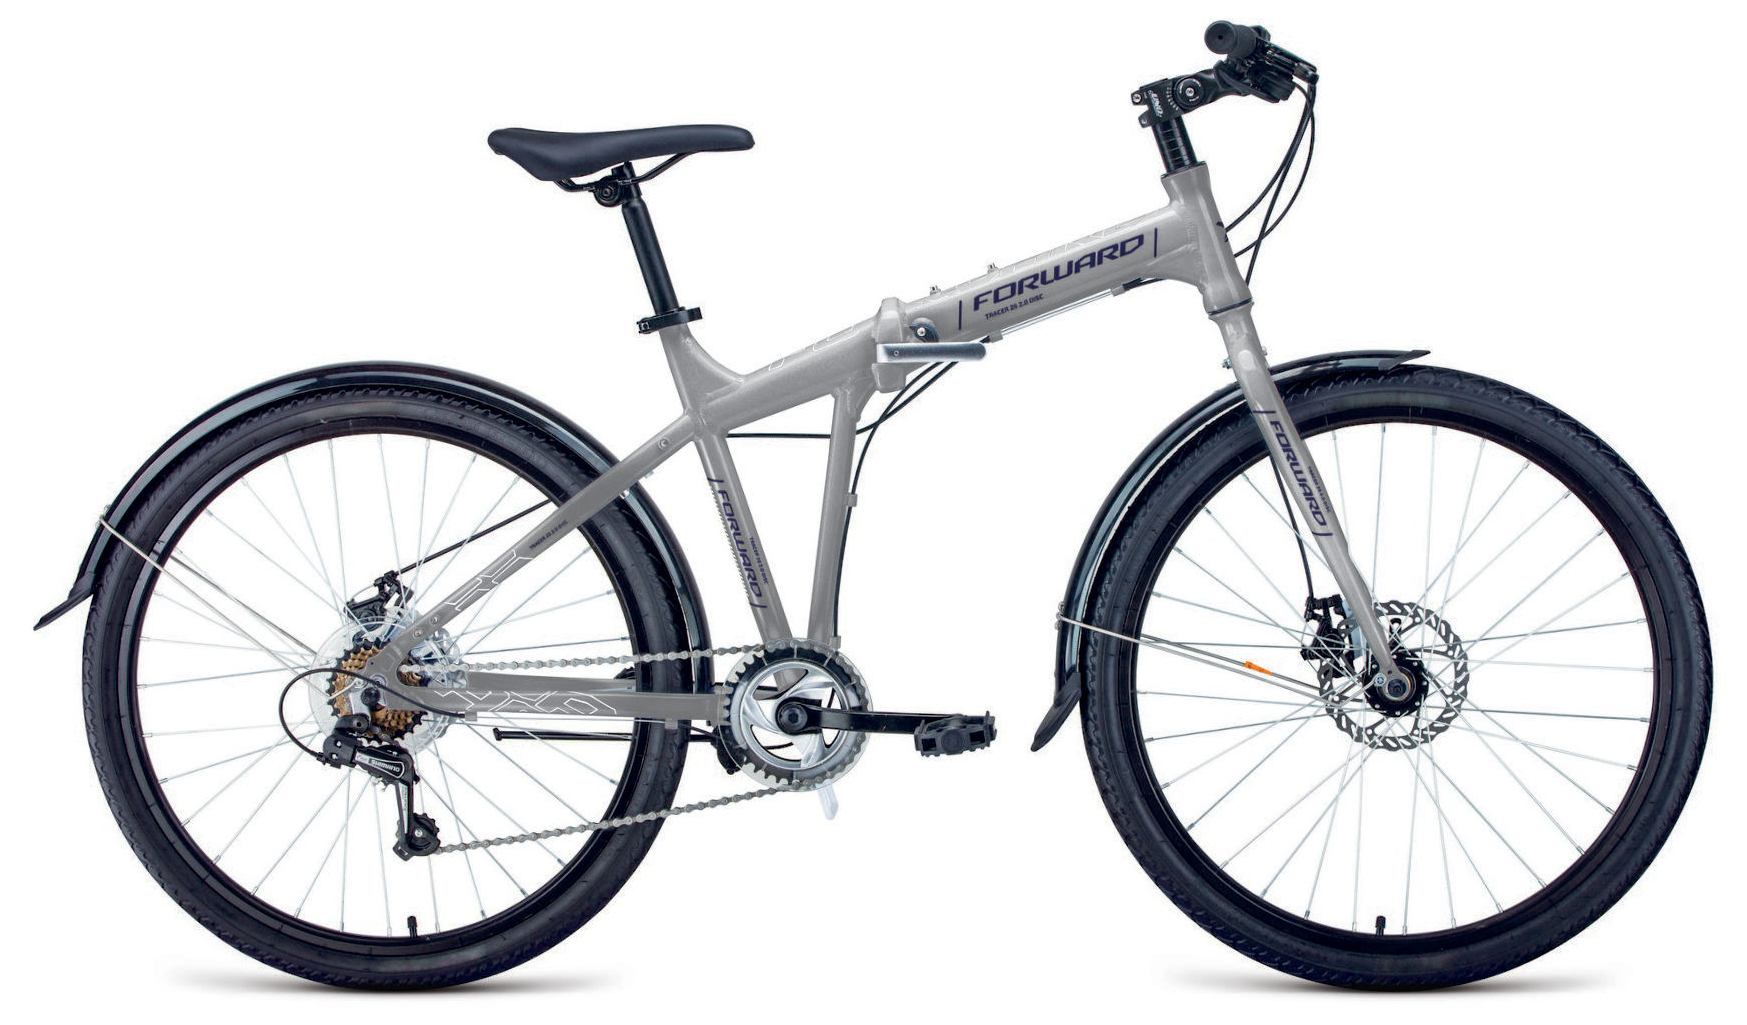  Отзывы о Складном велосипеде Forward Tracer 26 2.0 Disc 2020